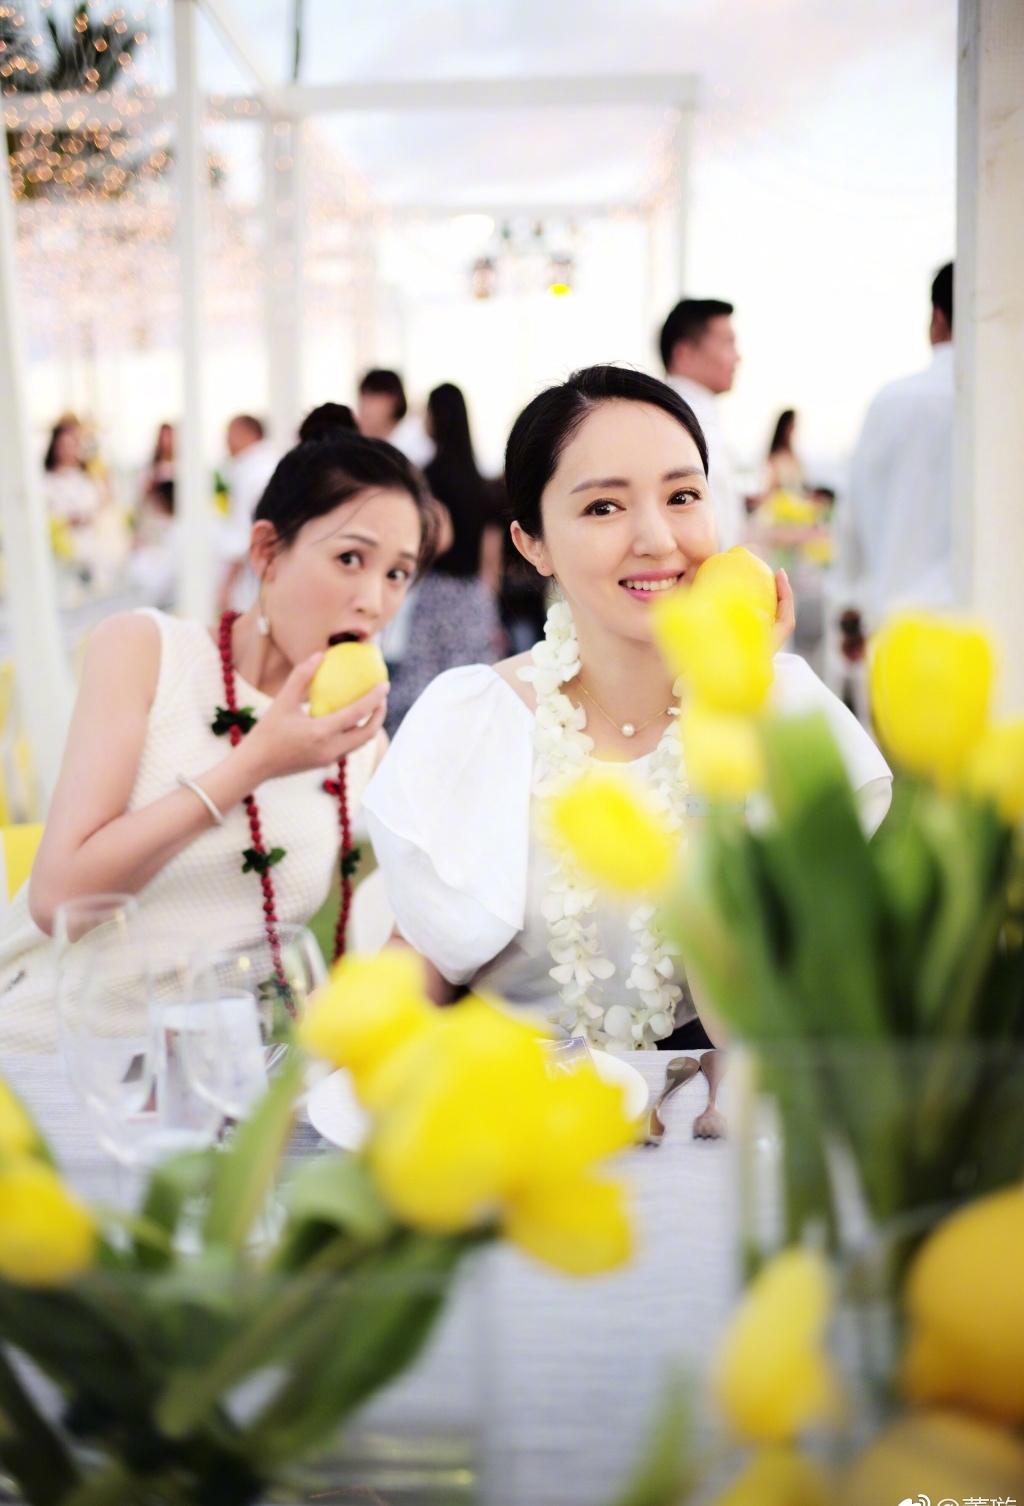 安以轩与澳门德晋集团总裁陈荣炼婚礼照片